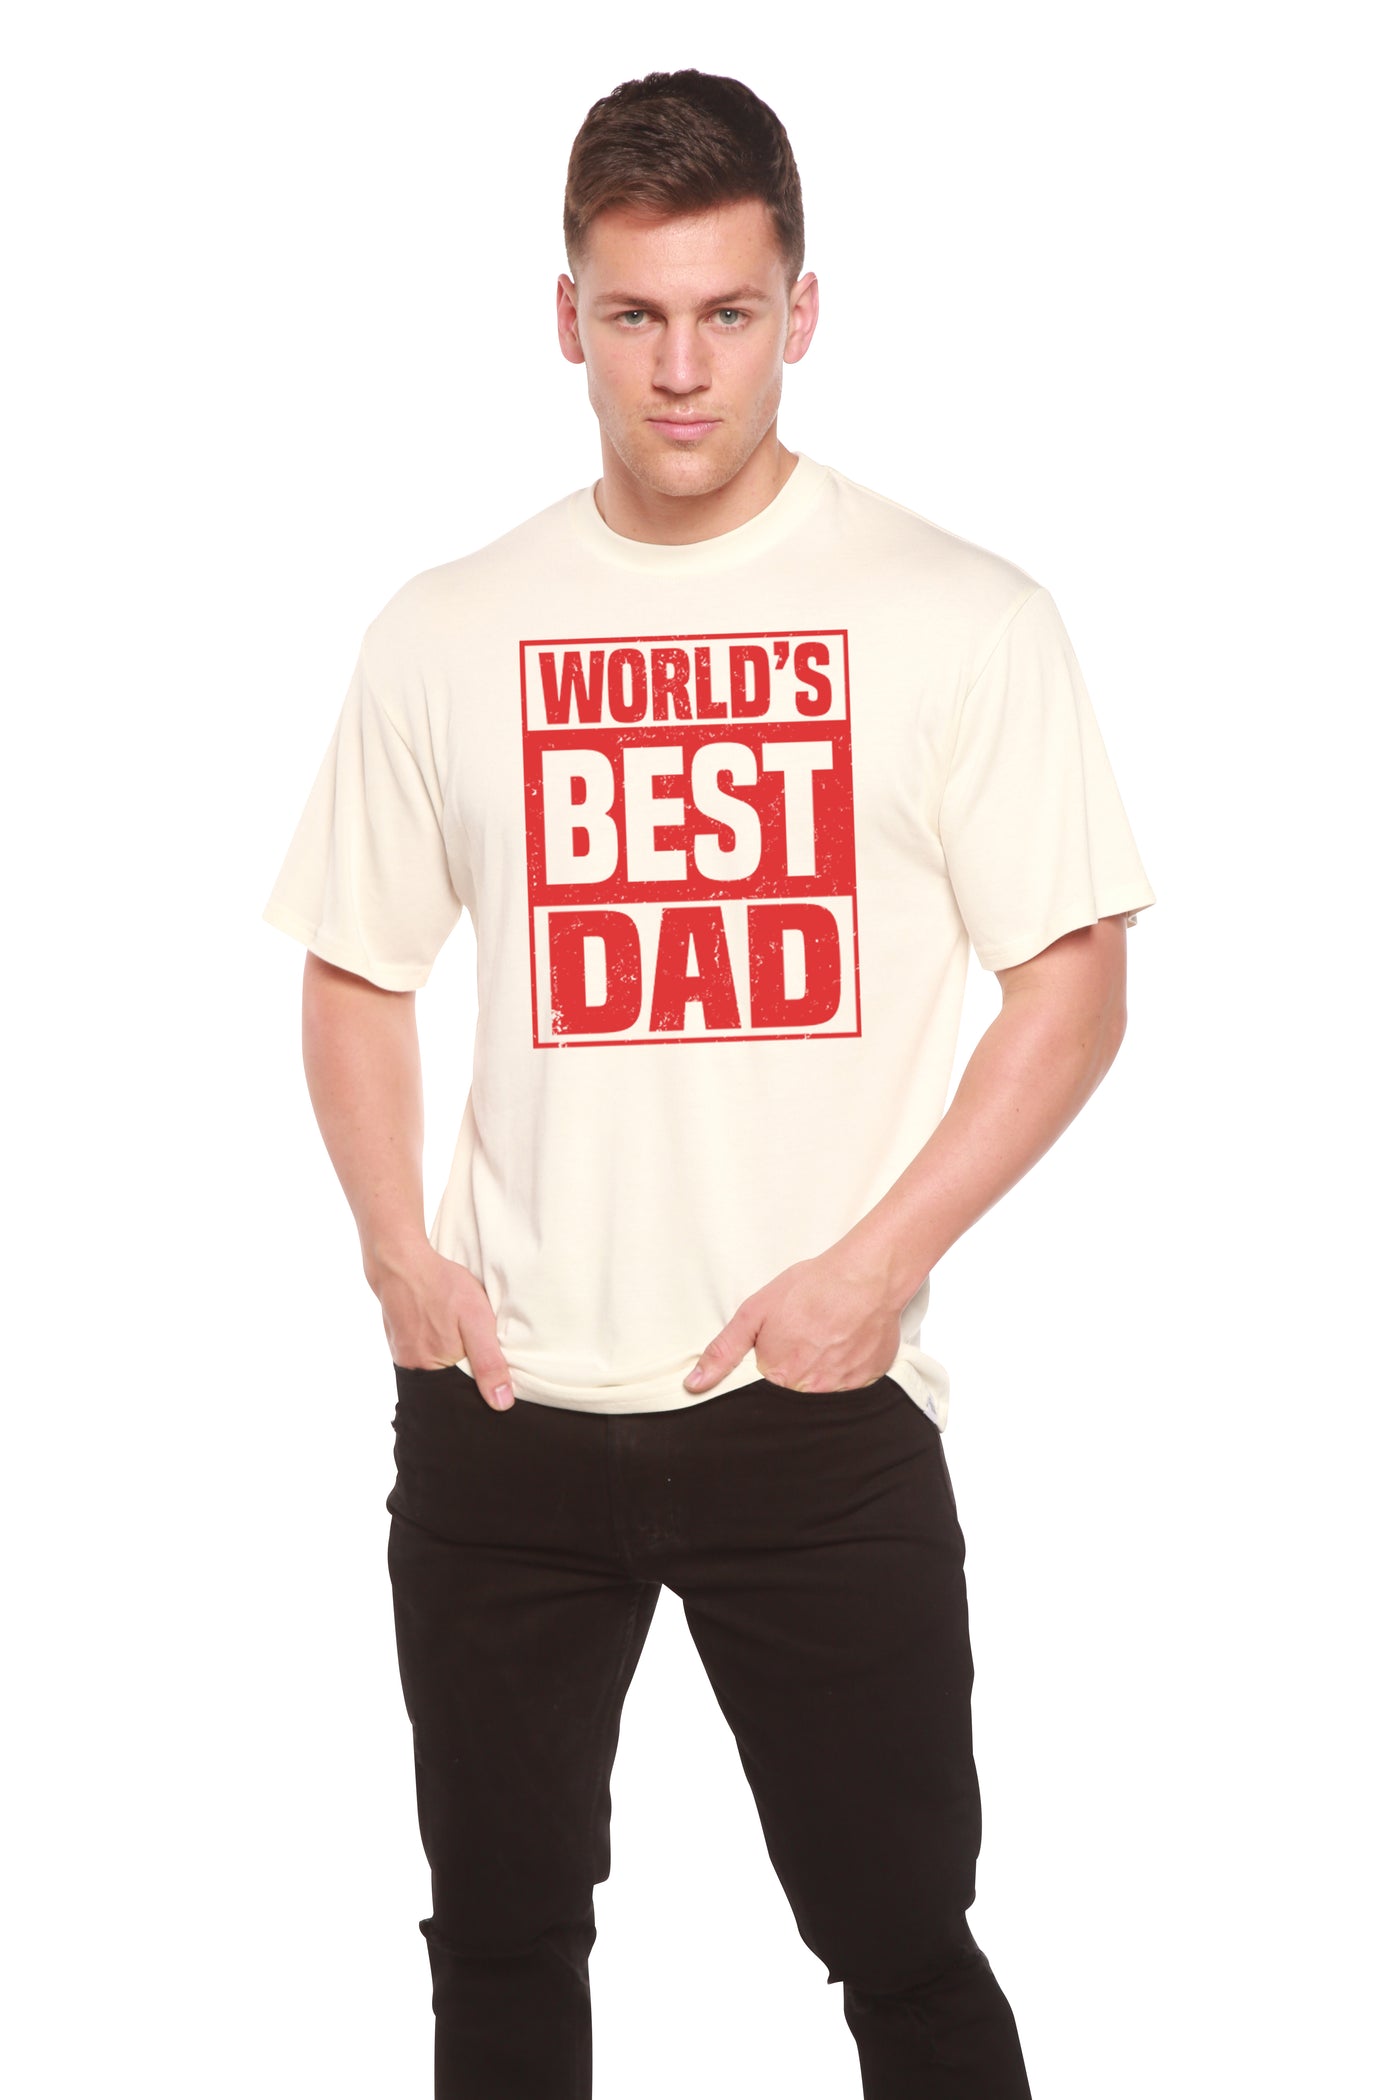 World's Best Dad Men's Bamboo Viscose/Organic Cotton Short Sleeve T-Shirt - Spun Bamboo